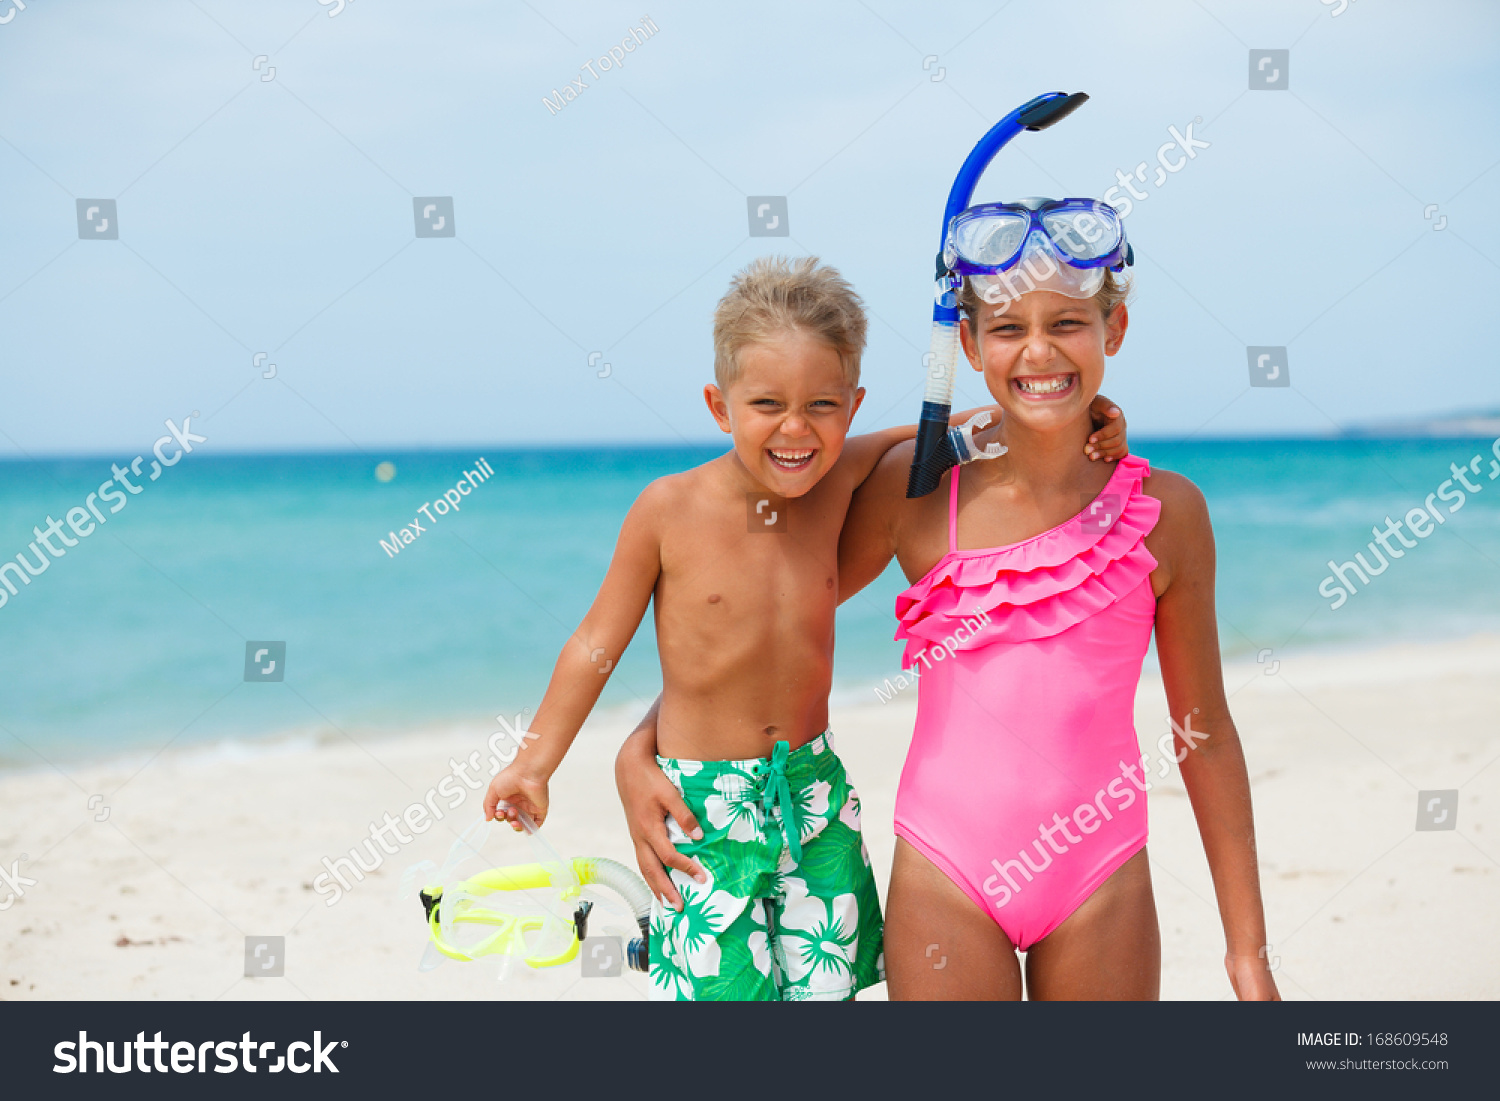 на нудистский пляж с детьми